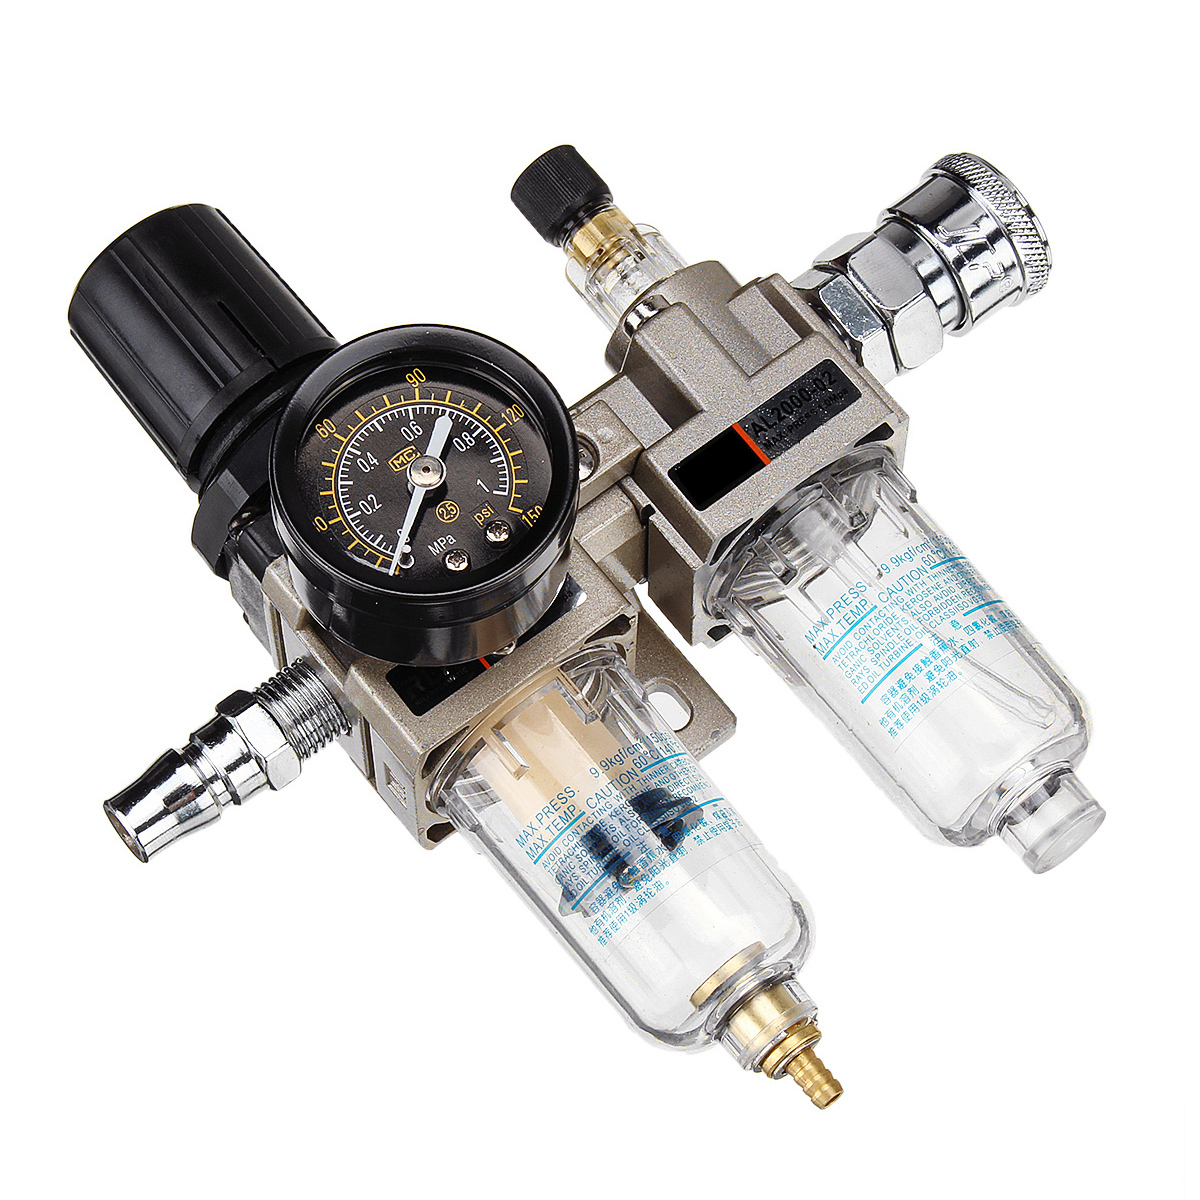 150Psi-Manual-Pneumatic-Air-Pressure-Filter-Regulator-Compressor-Oil-Water-Separator-1332880-5